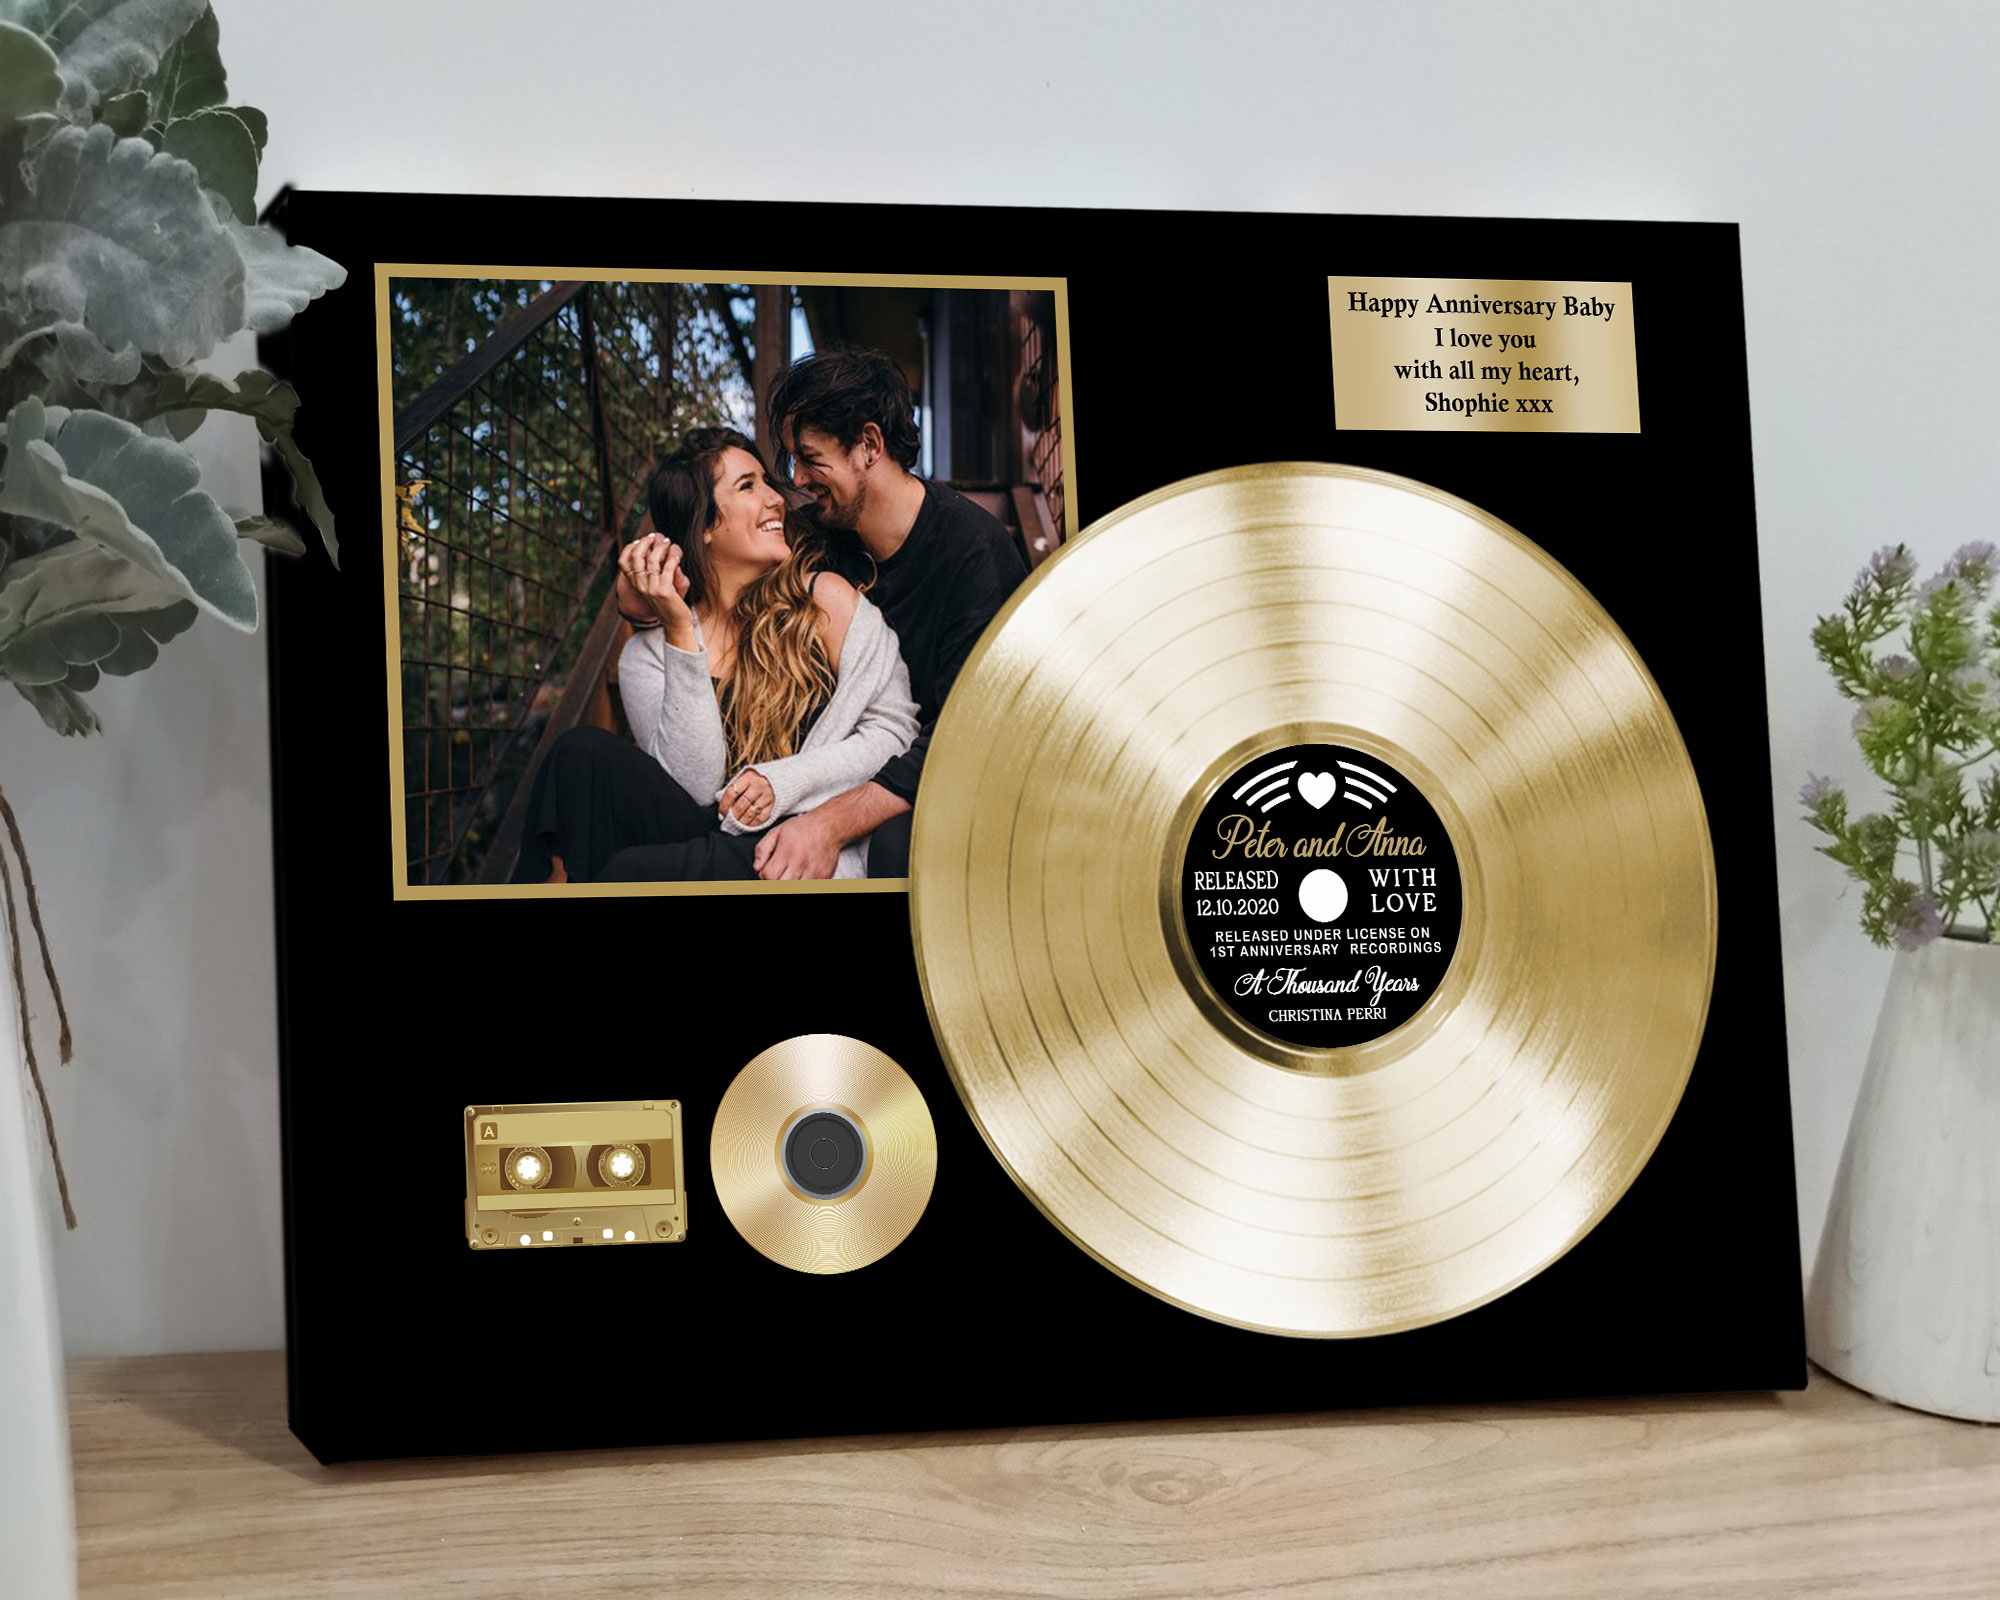 5th Wedding Anniversary Gifts, Custom Vinyl Record 5 Year Anniversary Gift